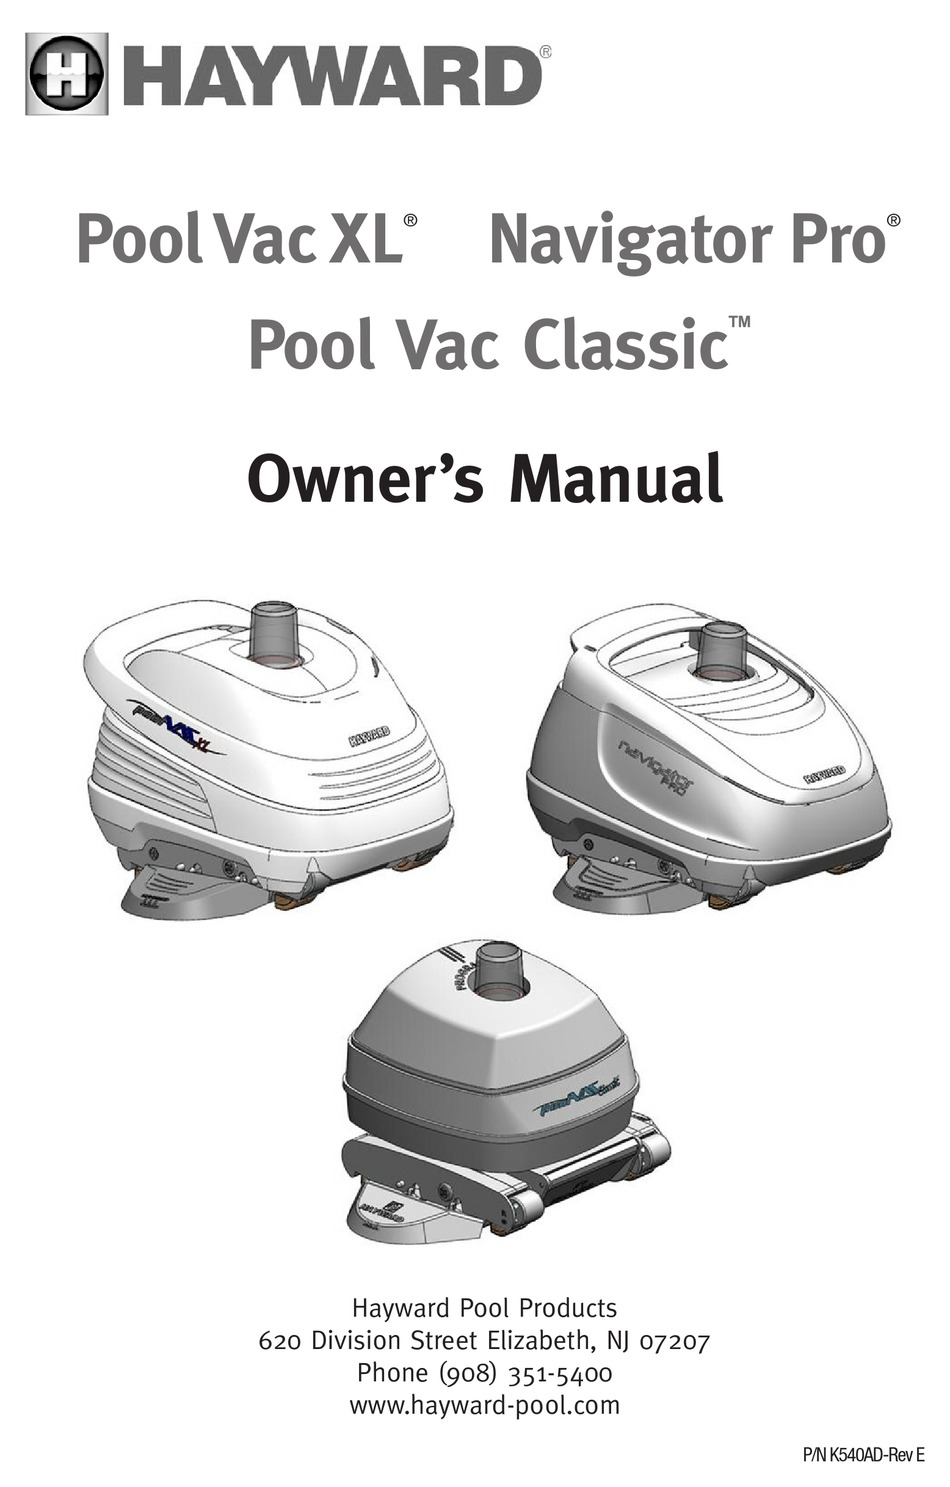 hayward-pool-vac-classic-owner-s-manual-pdf-download-manualslib